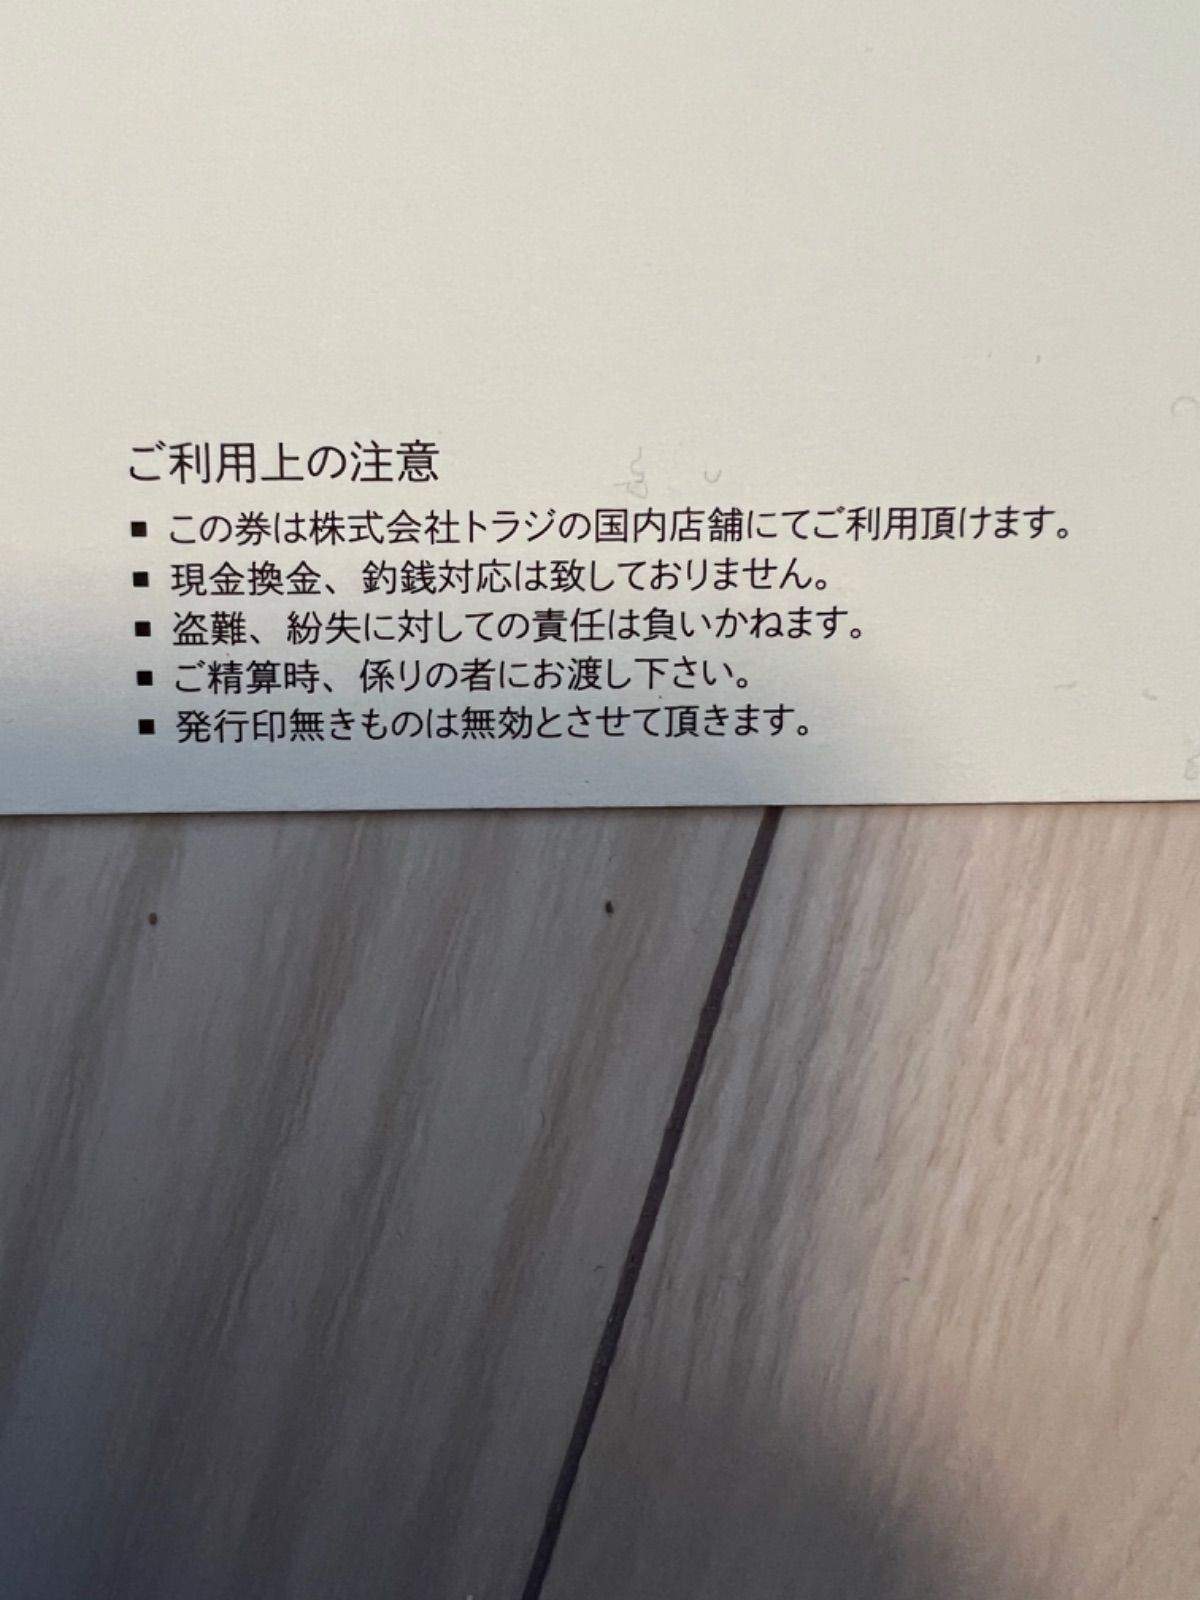 焼肉トラジ 食事券 10,000円分 - メルカリ